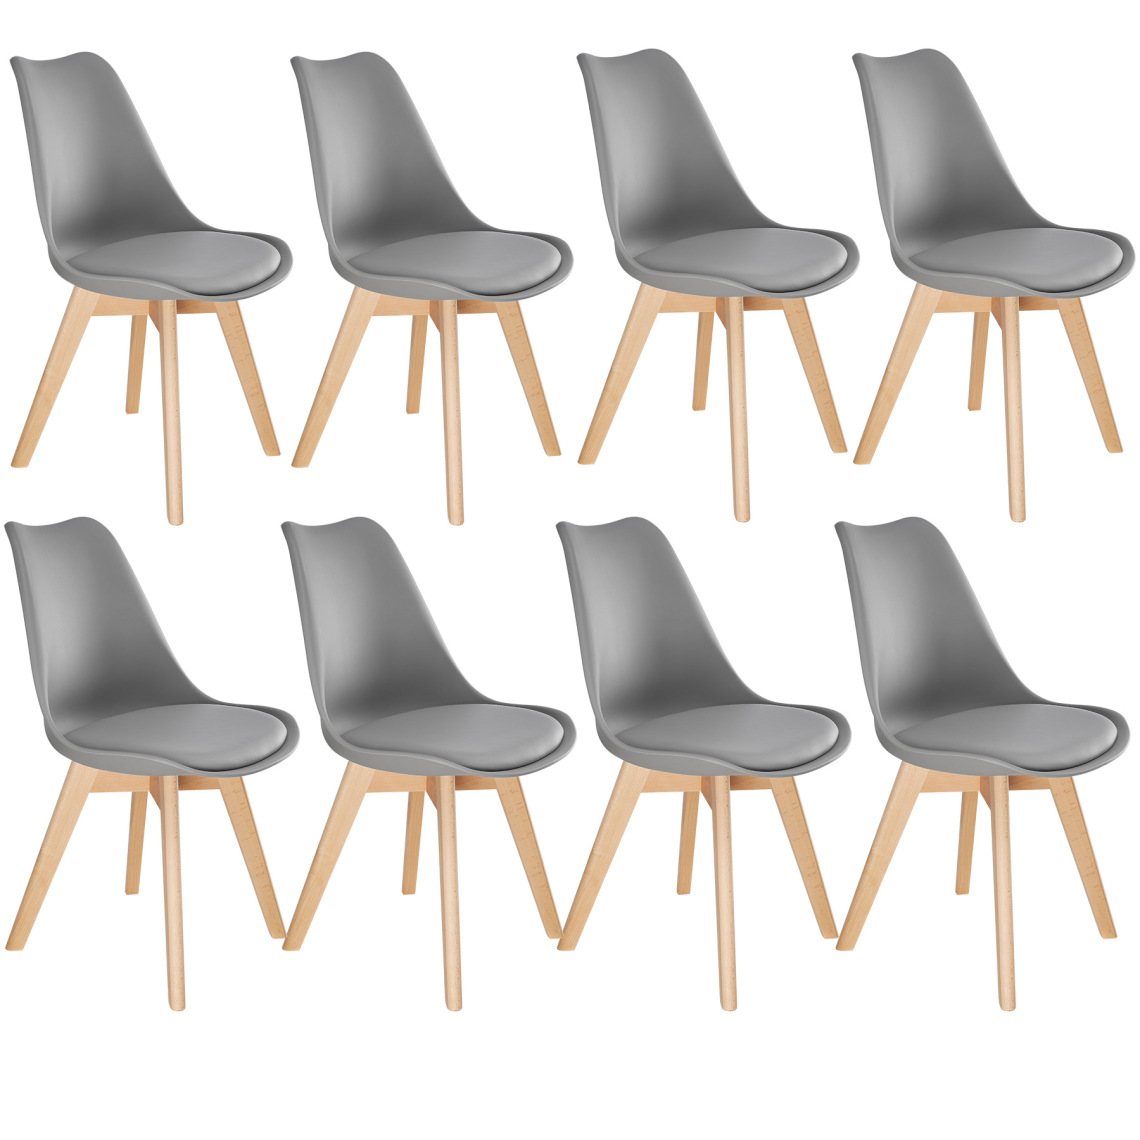 Tectake - 8 Chaises de Salle à Manger FRÉDÉRIQUE Style Scandinave Pieds en Bois Massif Design Moderne - gris - Chaises